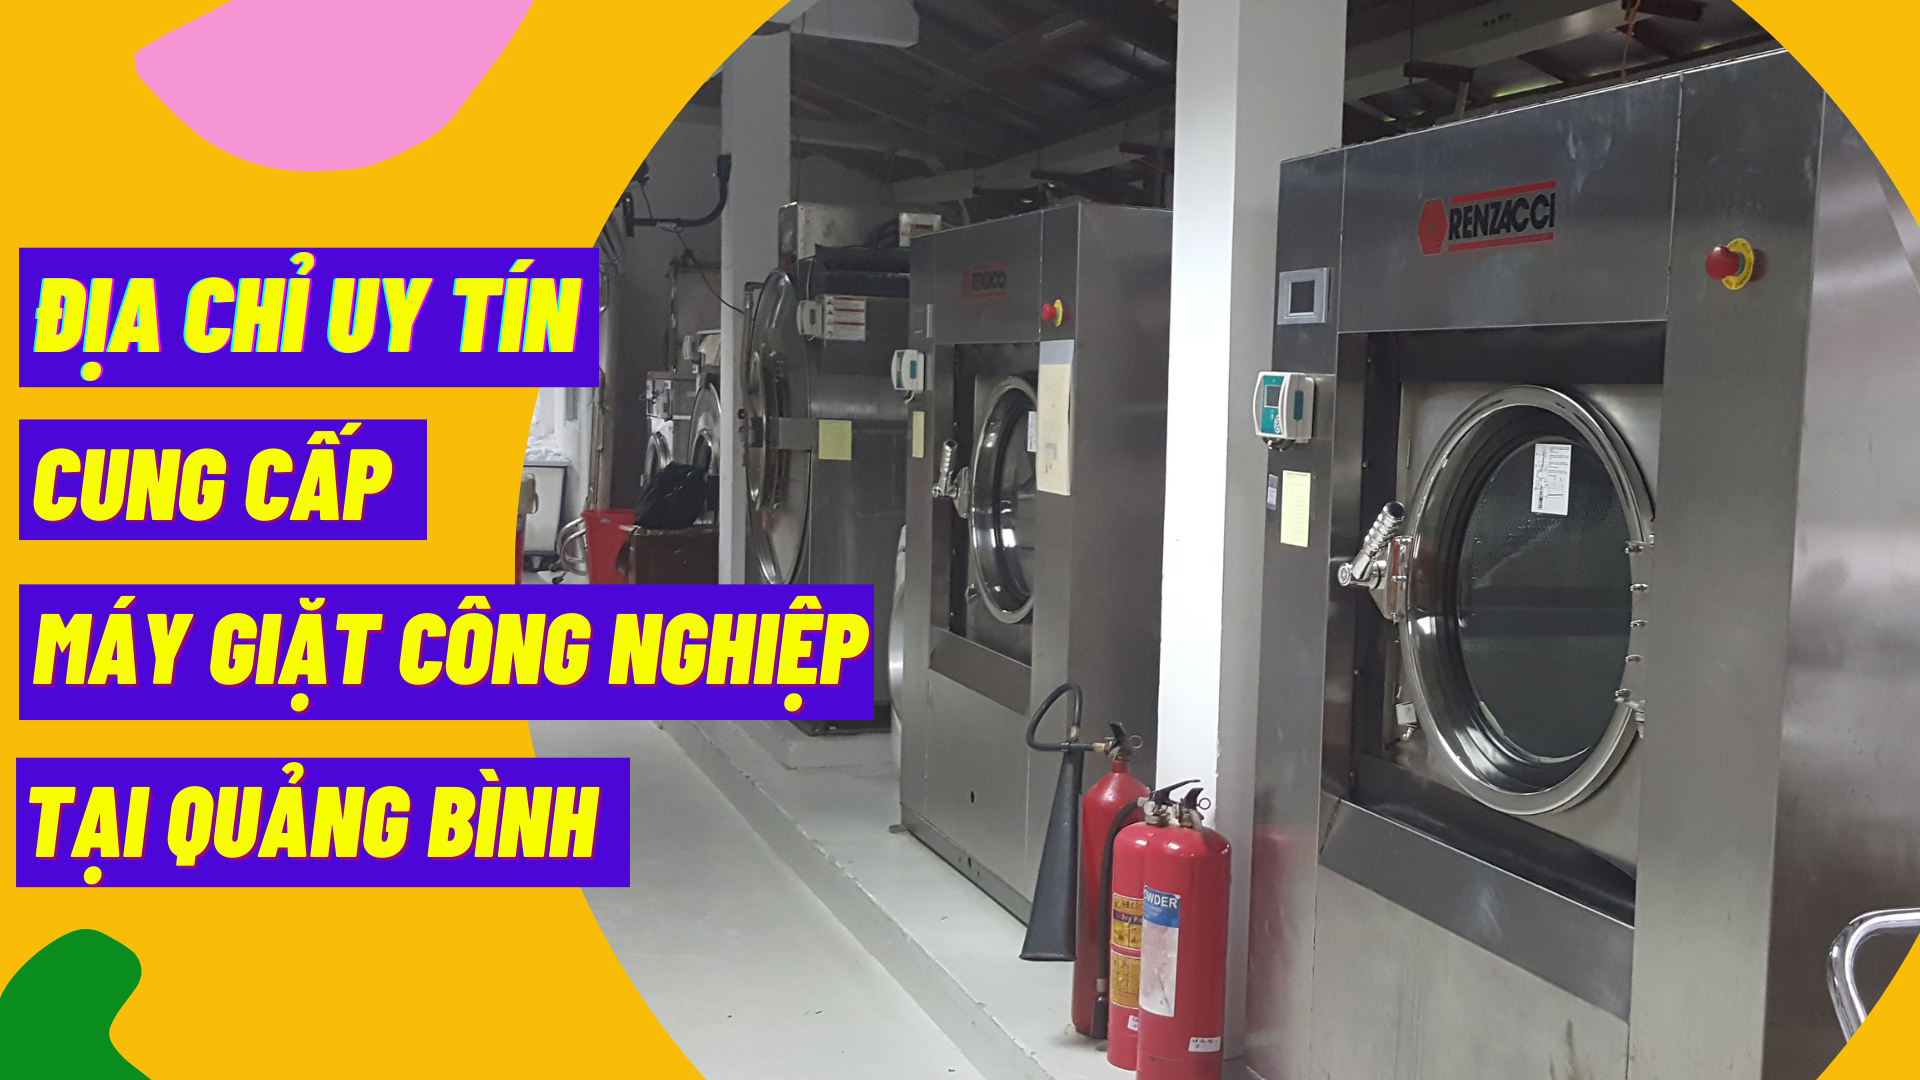 Địa chỉ uy tín cung cấp máy giặt công nghiệp tại Quảng Bình